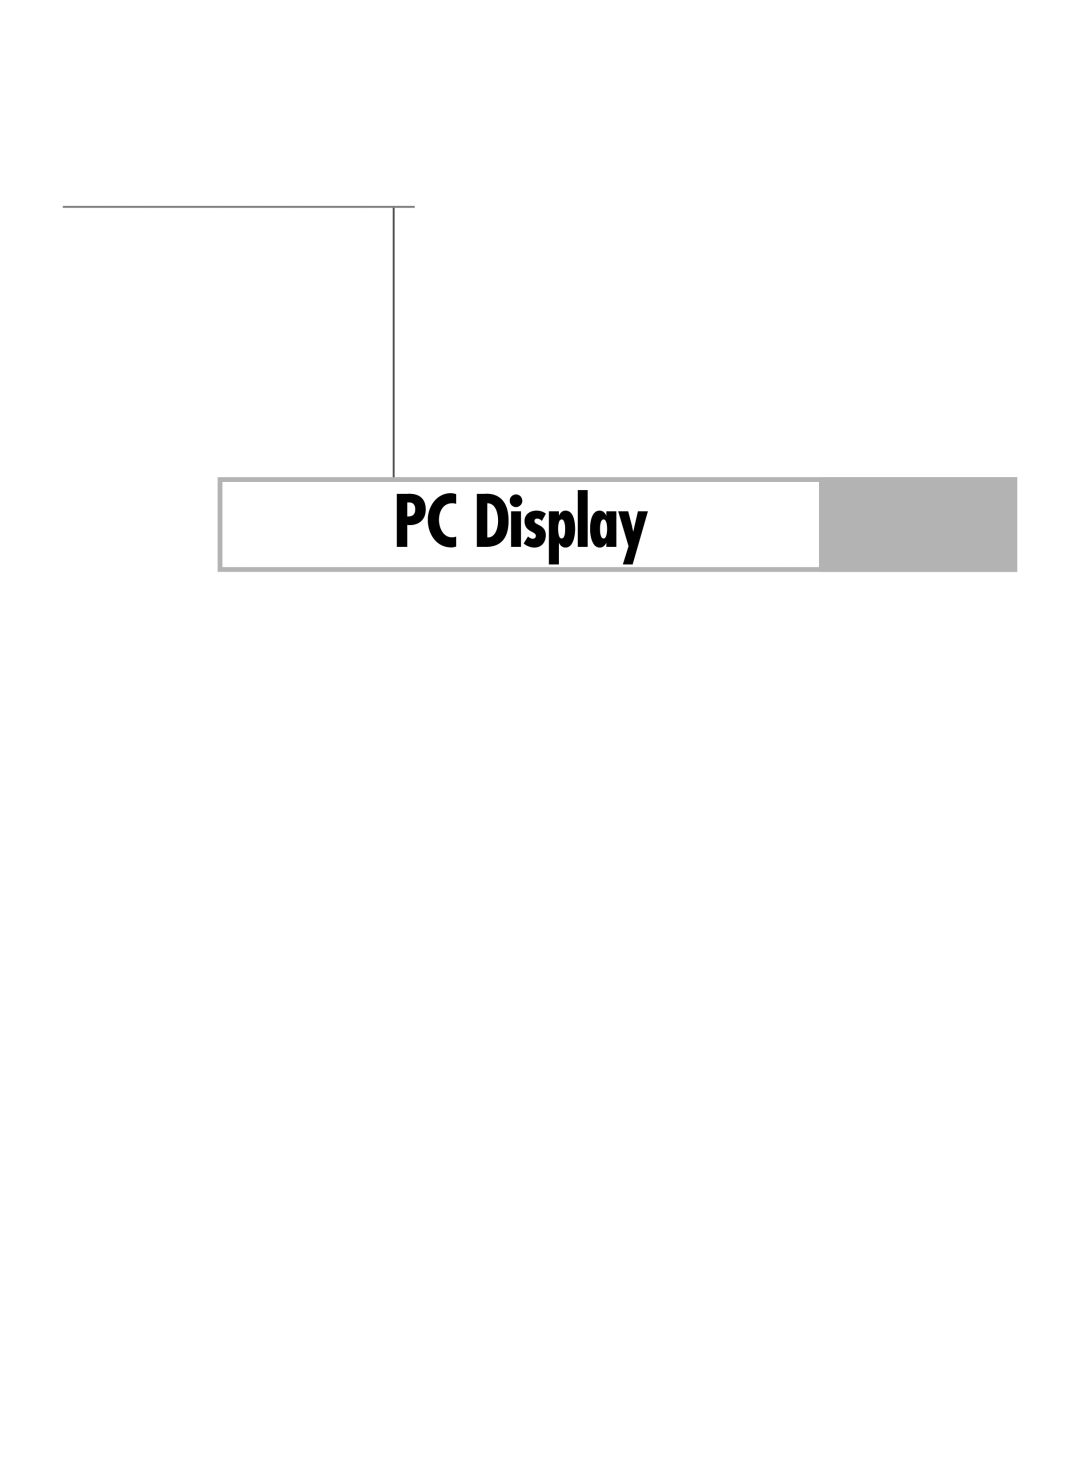 Samsung HL-R5678W, HL-R6178W, HL-R7178W manual PC Display 